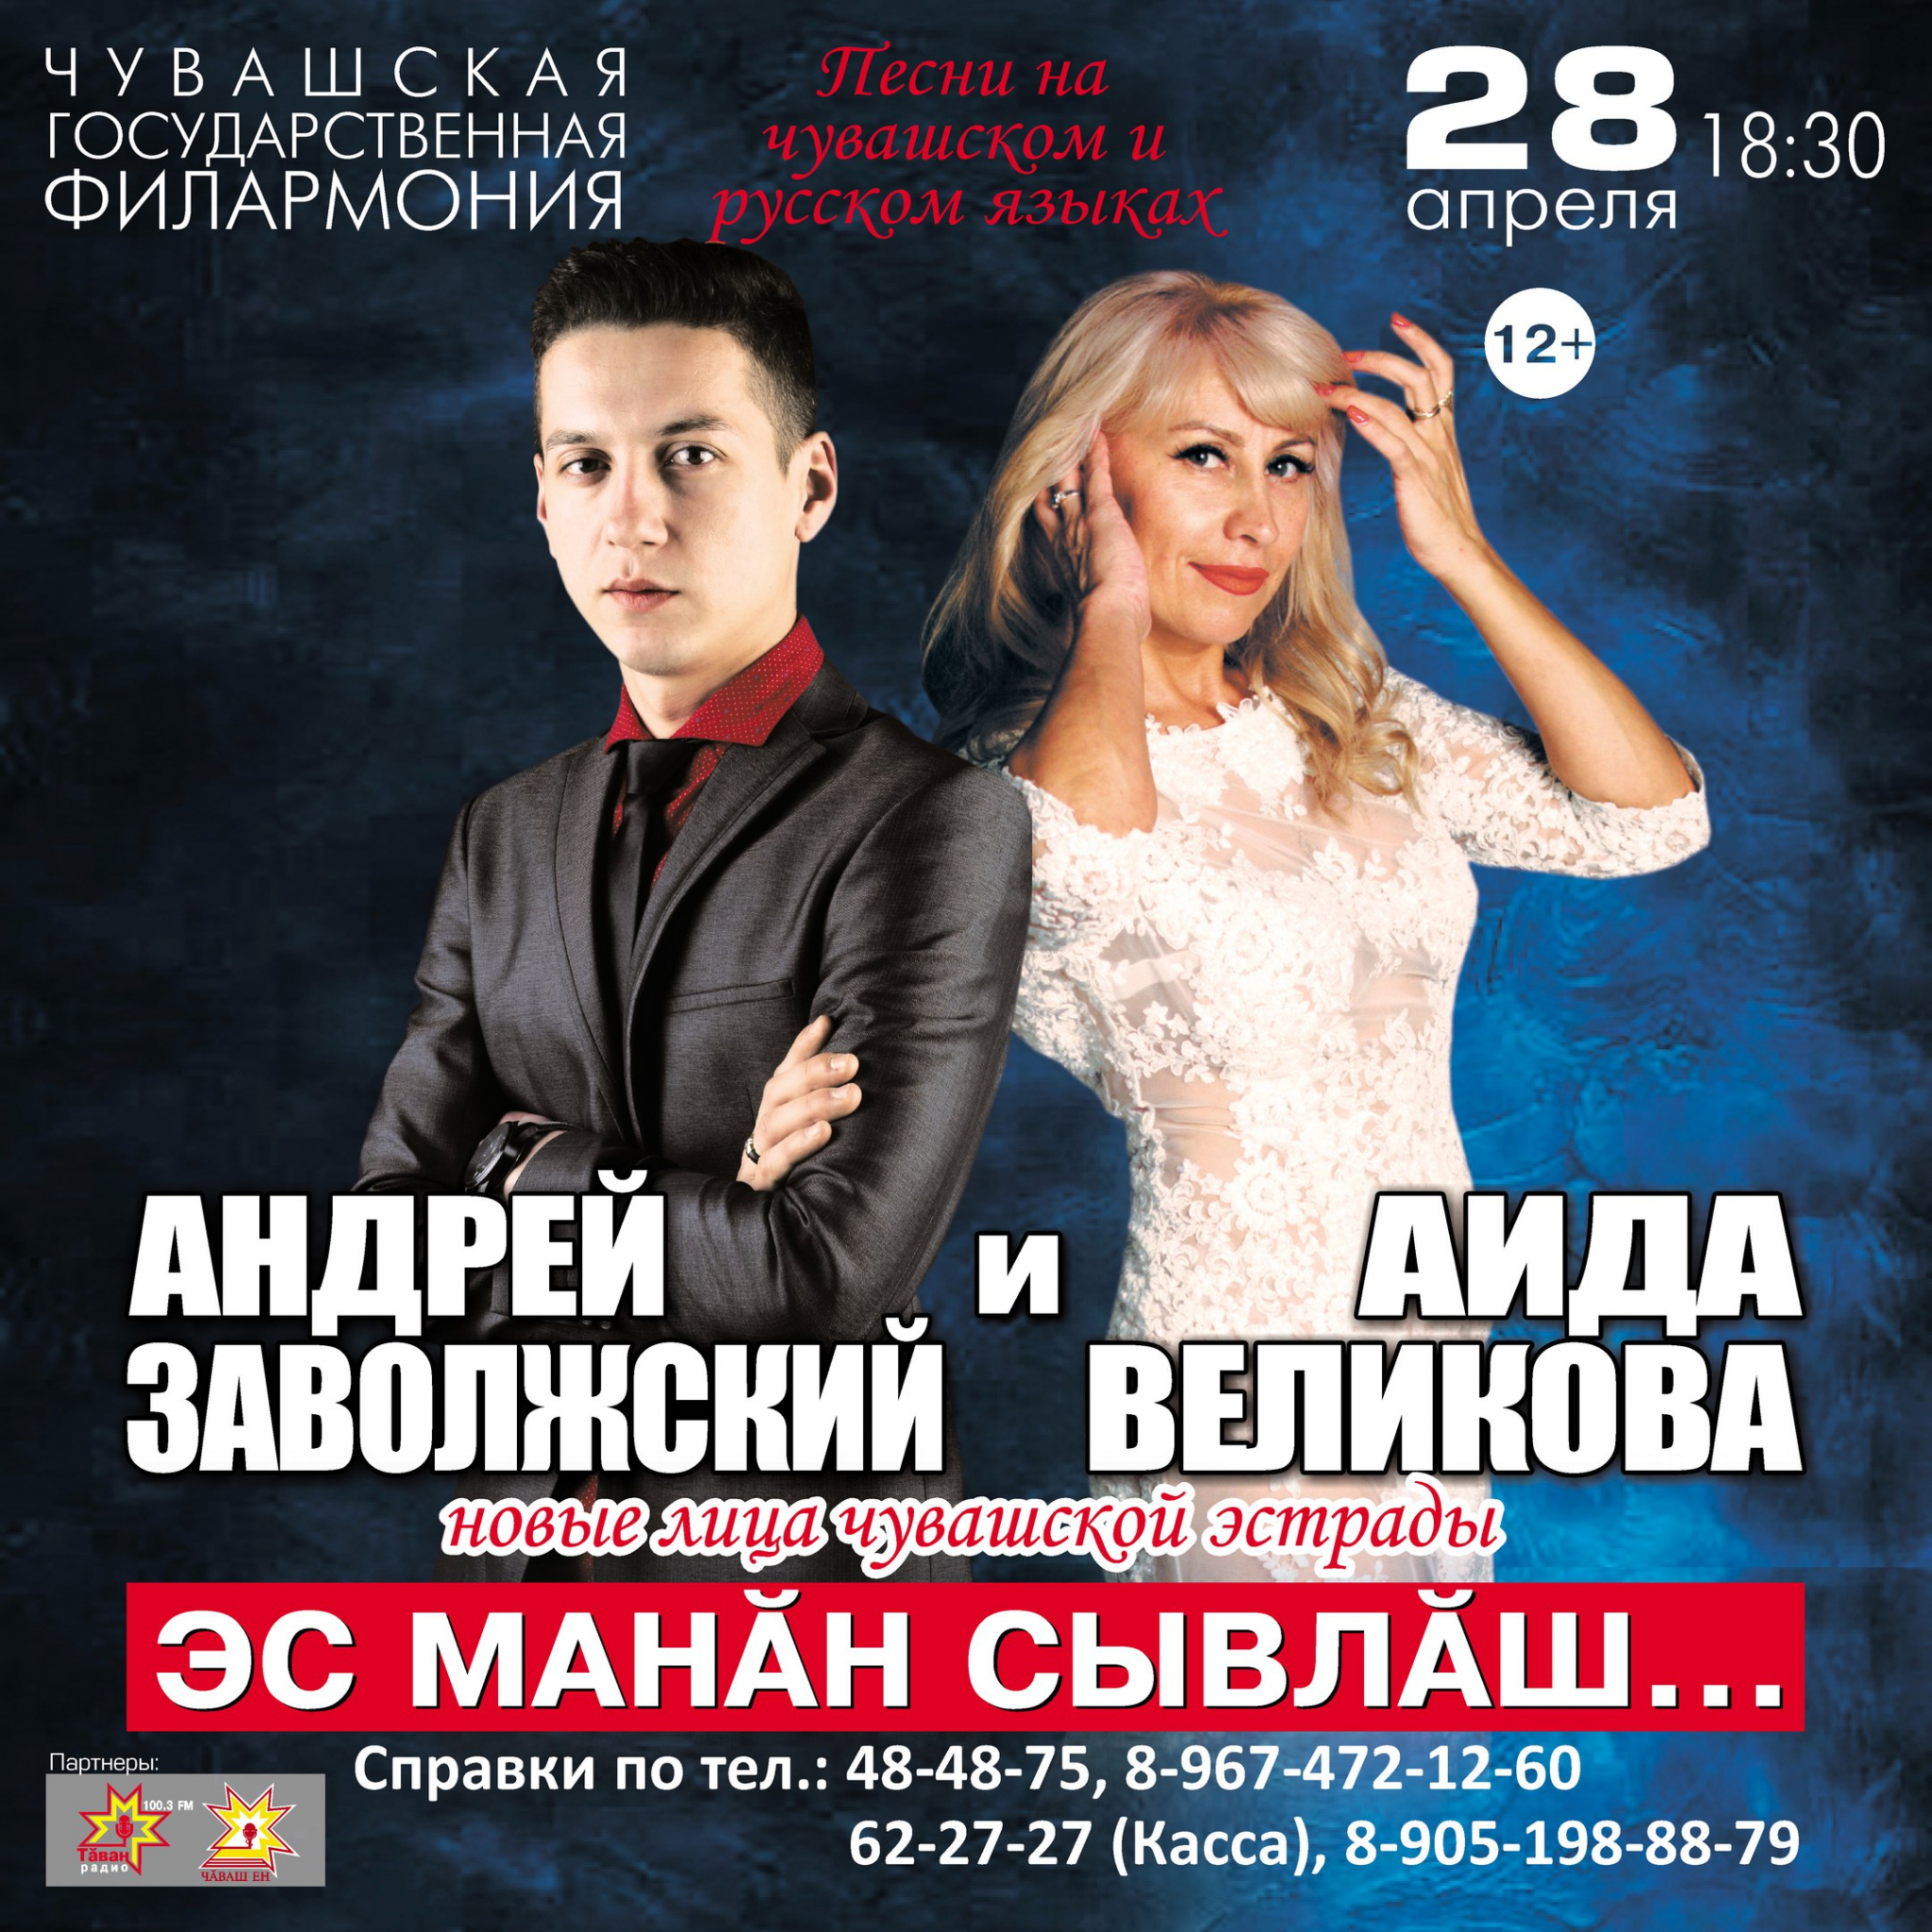 Концерт Андрея Заволжского и Аиды Великовой (12+)